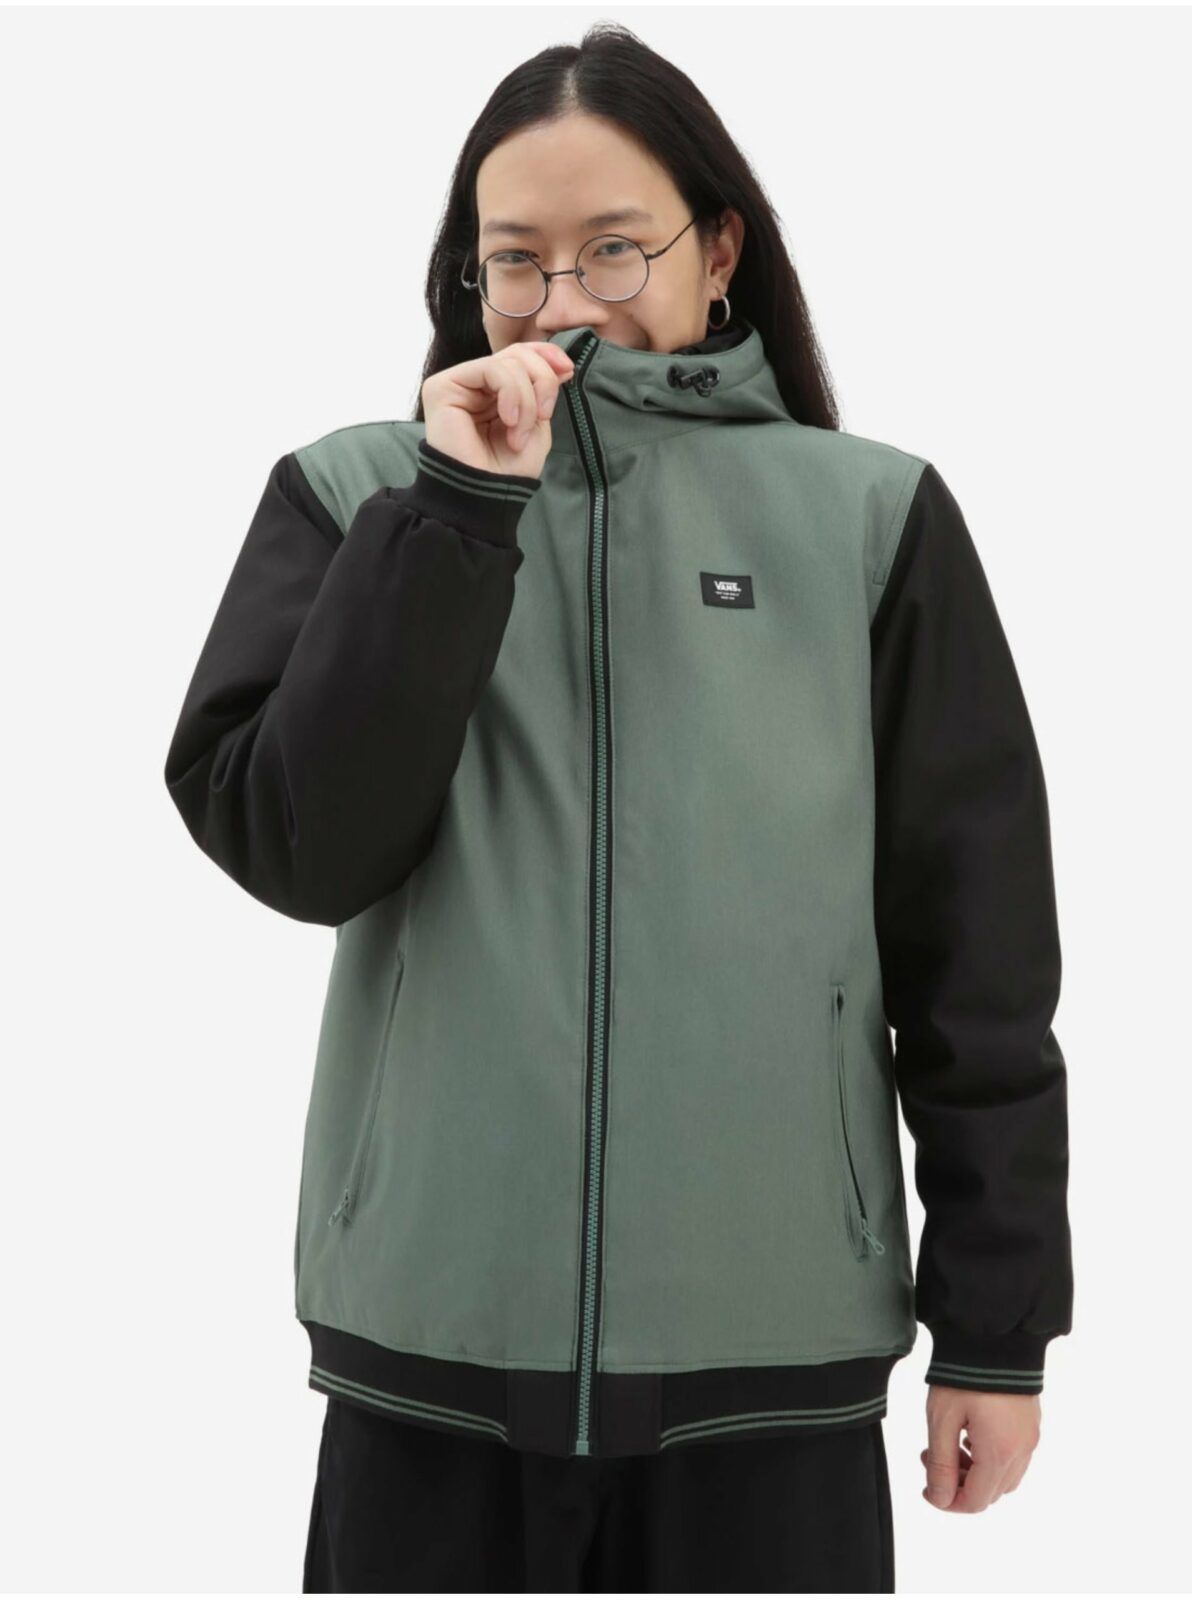 Černo-zelená pánská nepromokavá bunda s kapucí